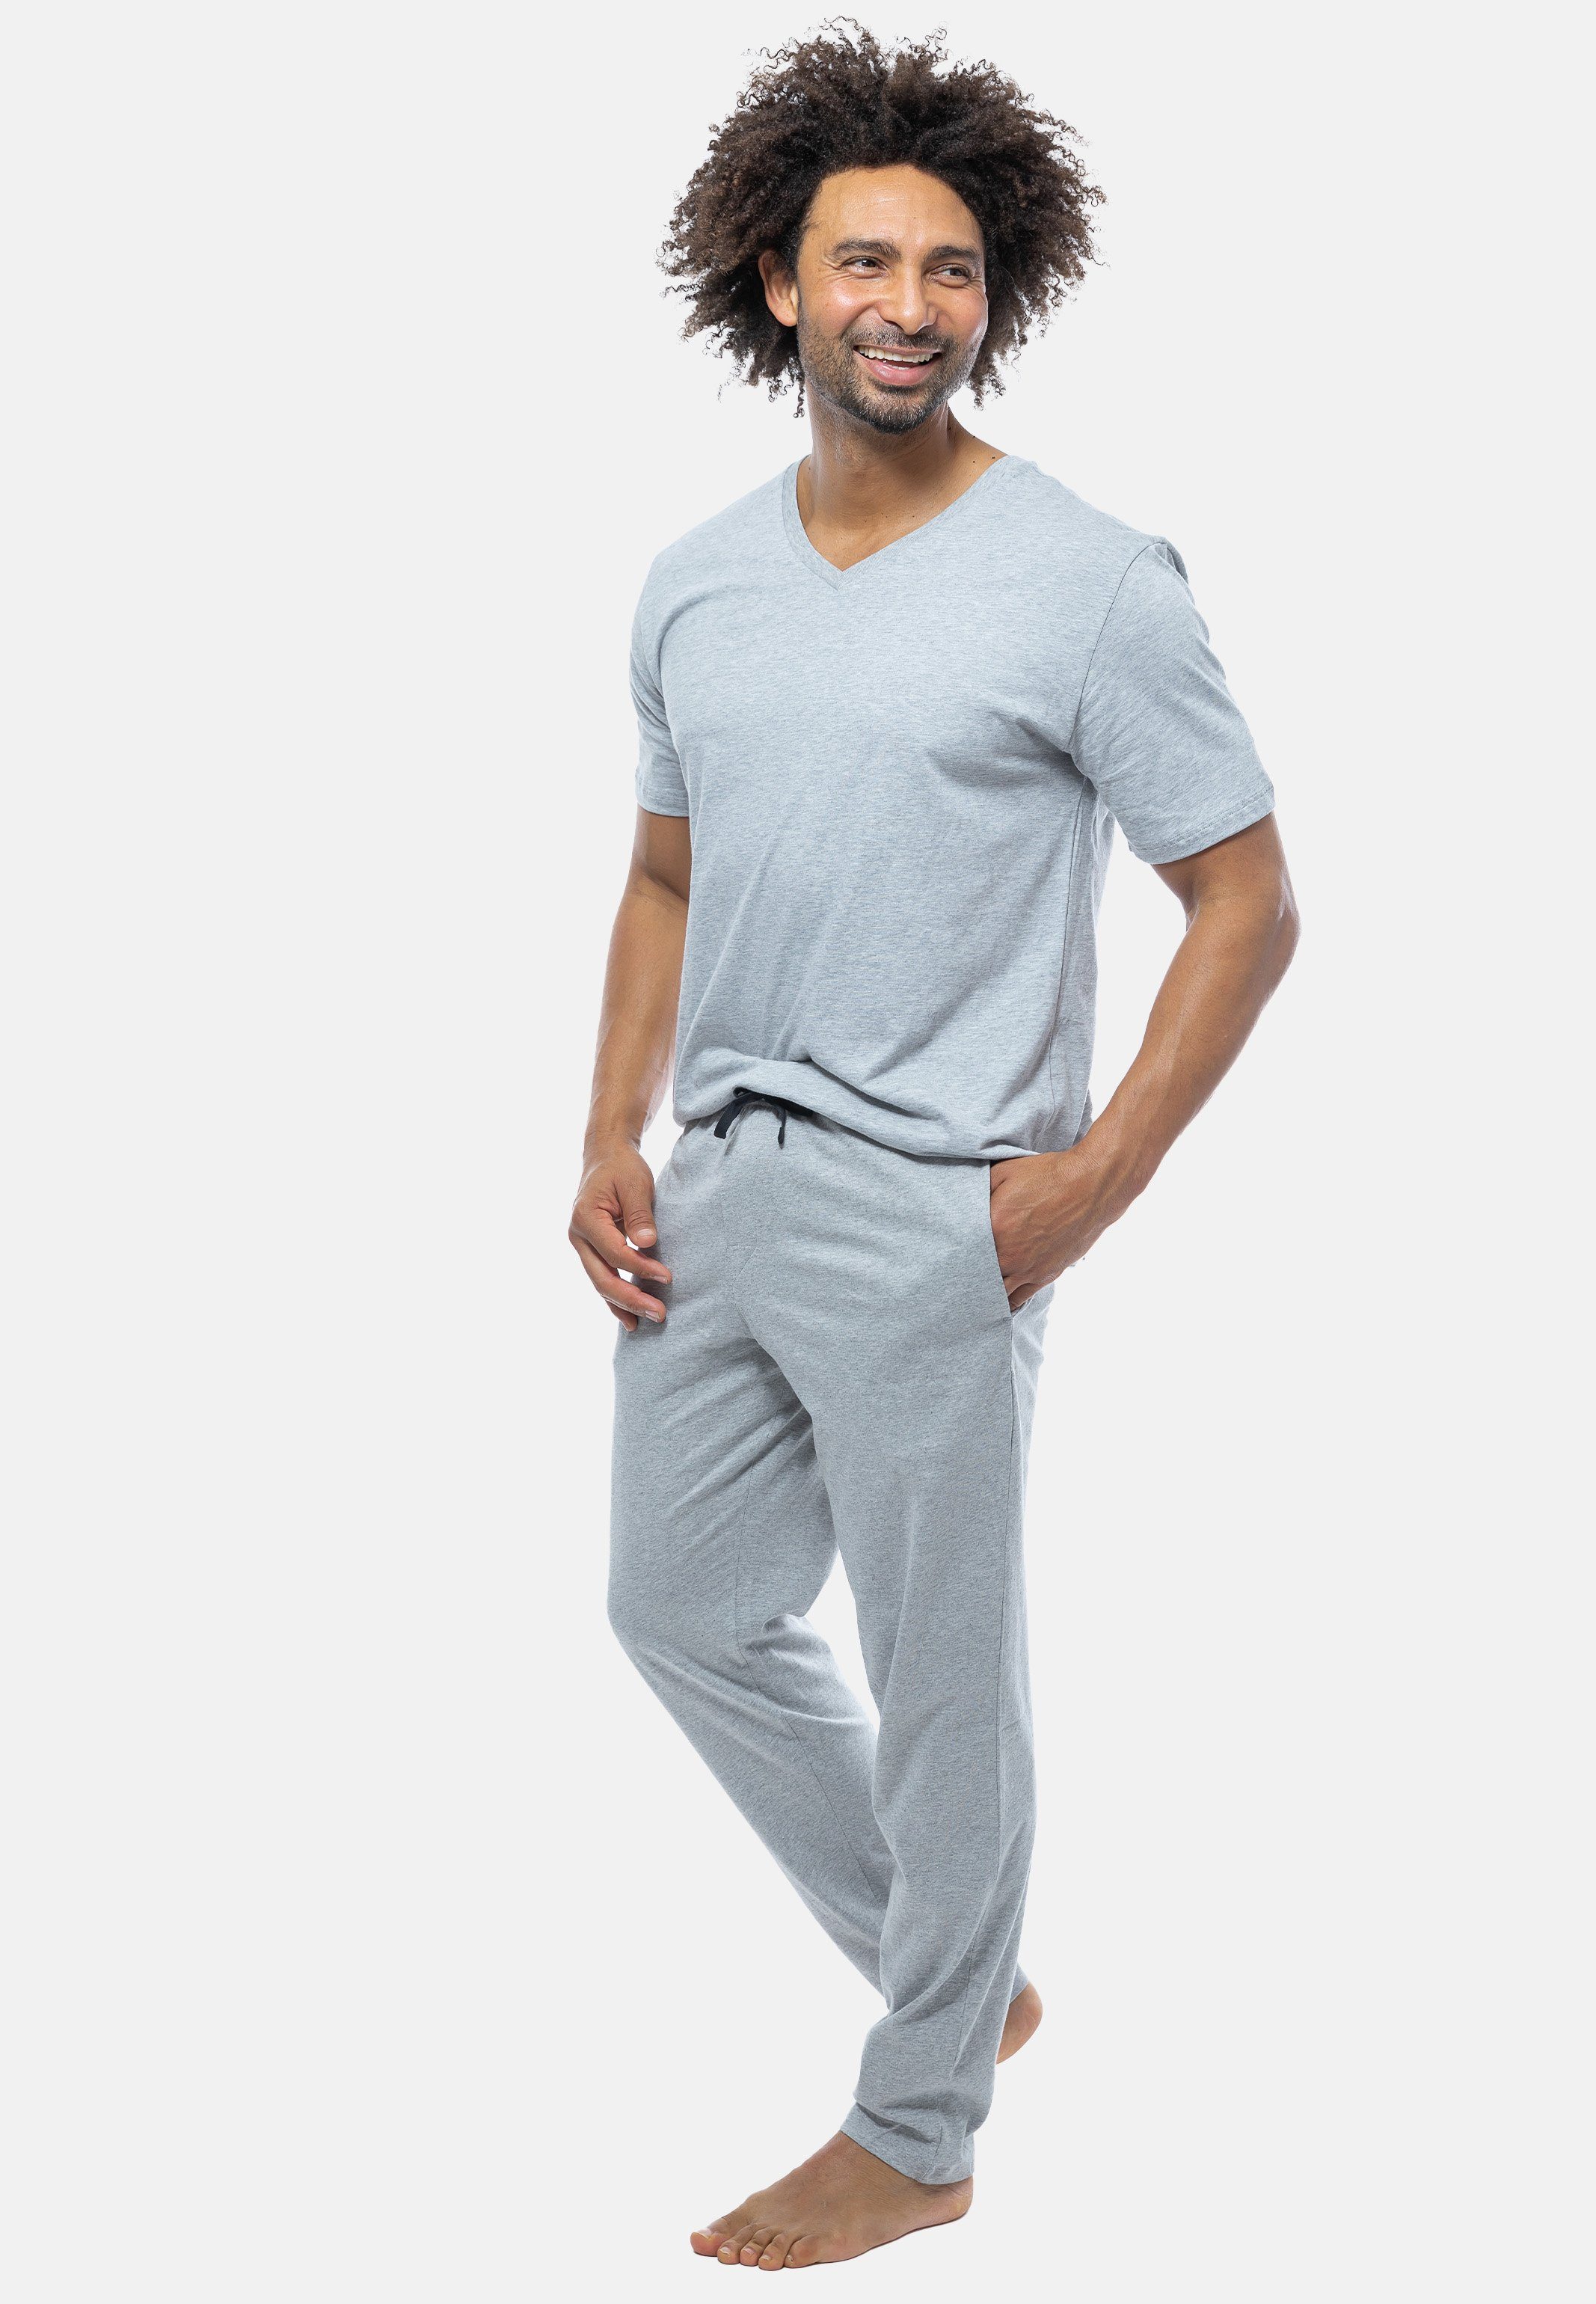 Grau Schlafanzug Baumwolle Mix - V-Ausschnitt (Set, - mit 2 Pyjama Schiesser Kurzarm-Shirt tlg)